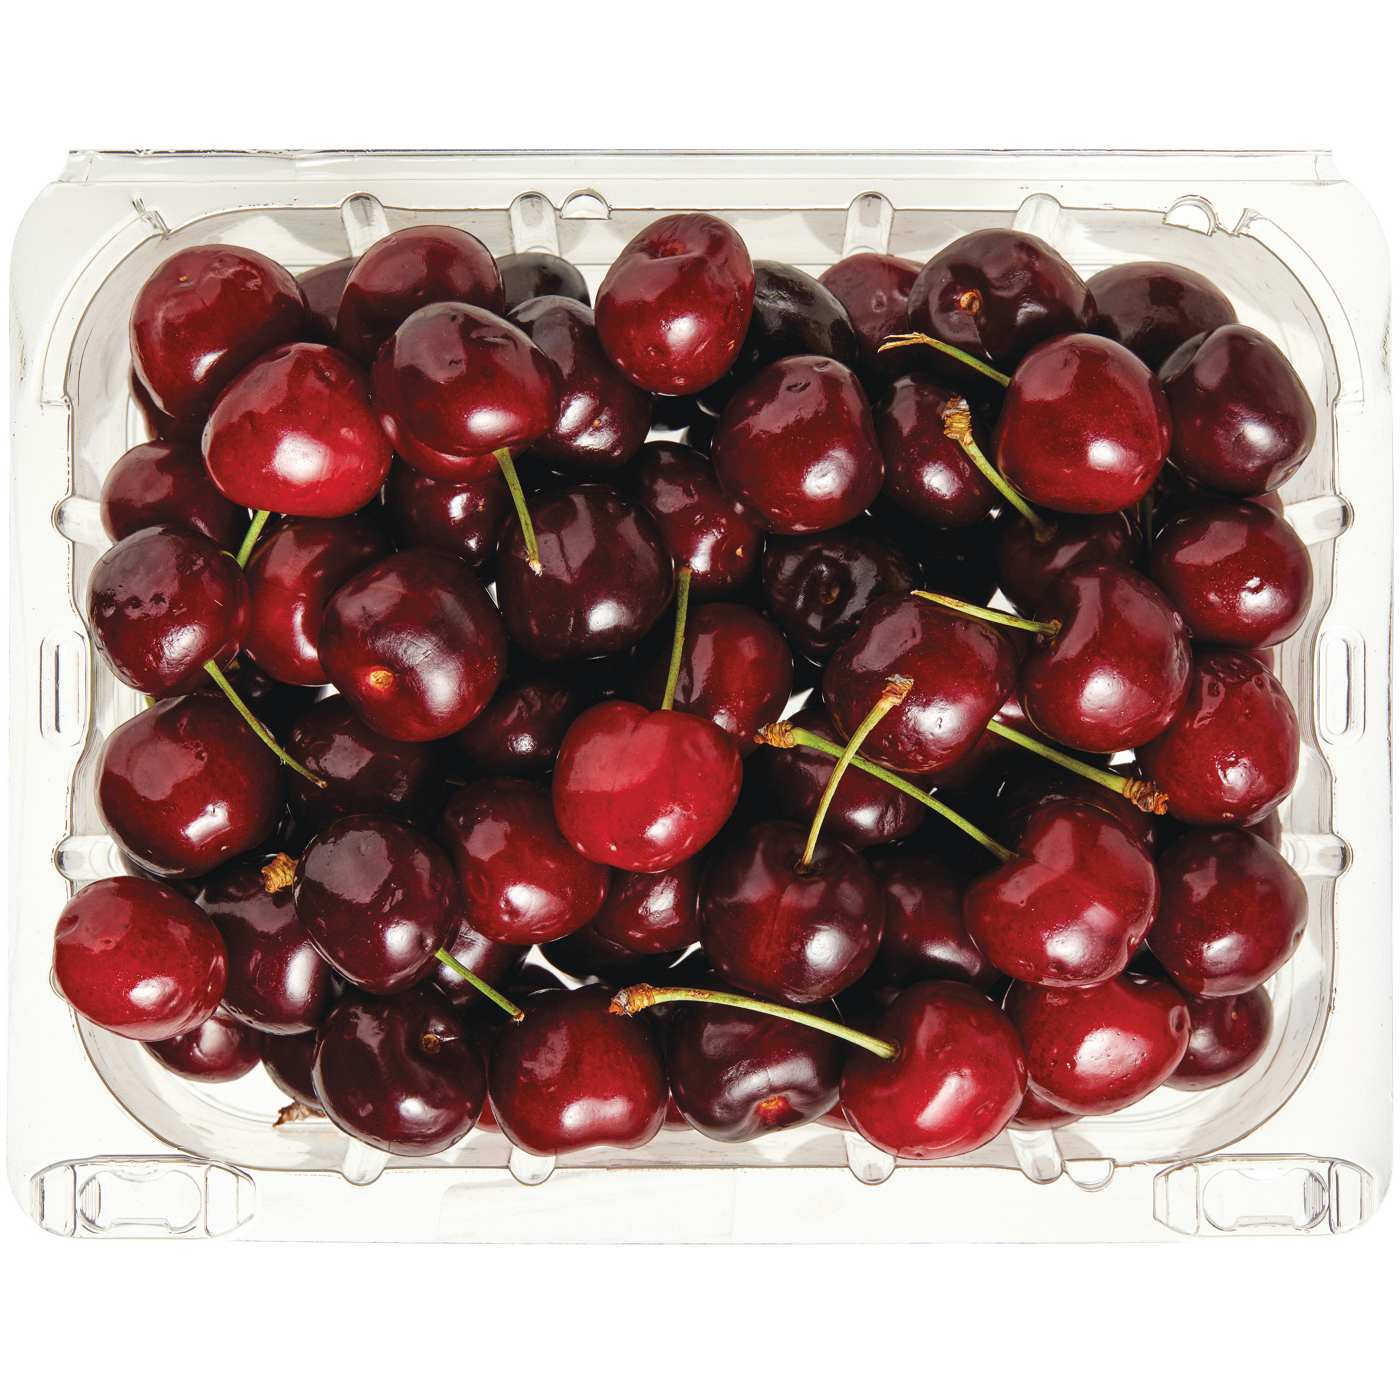 Fresh Cherries; image 1 of 2